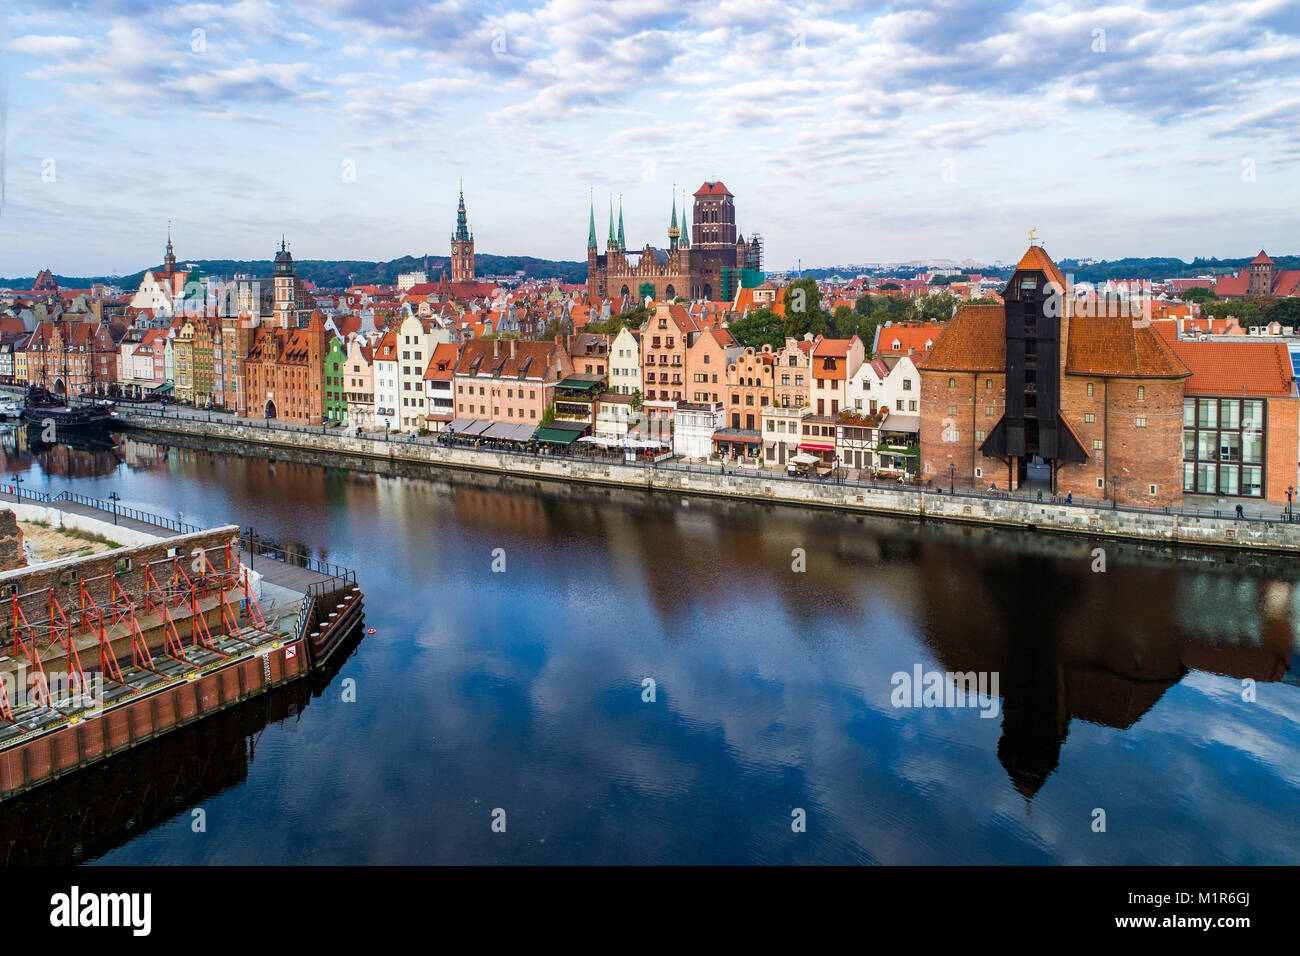 Vieille ville de Gdansk en Pologne avec la grue du port médiéval plus ancien (Zuraw) en Europe, l'église St Mary, l'hôtel de ville et tour de la rivière Motlawa. Vue aérienne. Banque D'Images